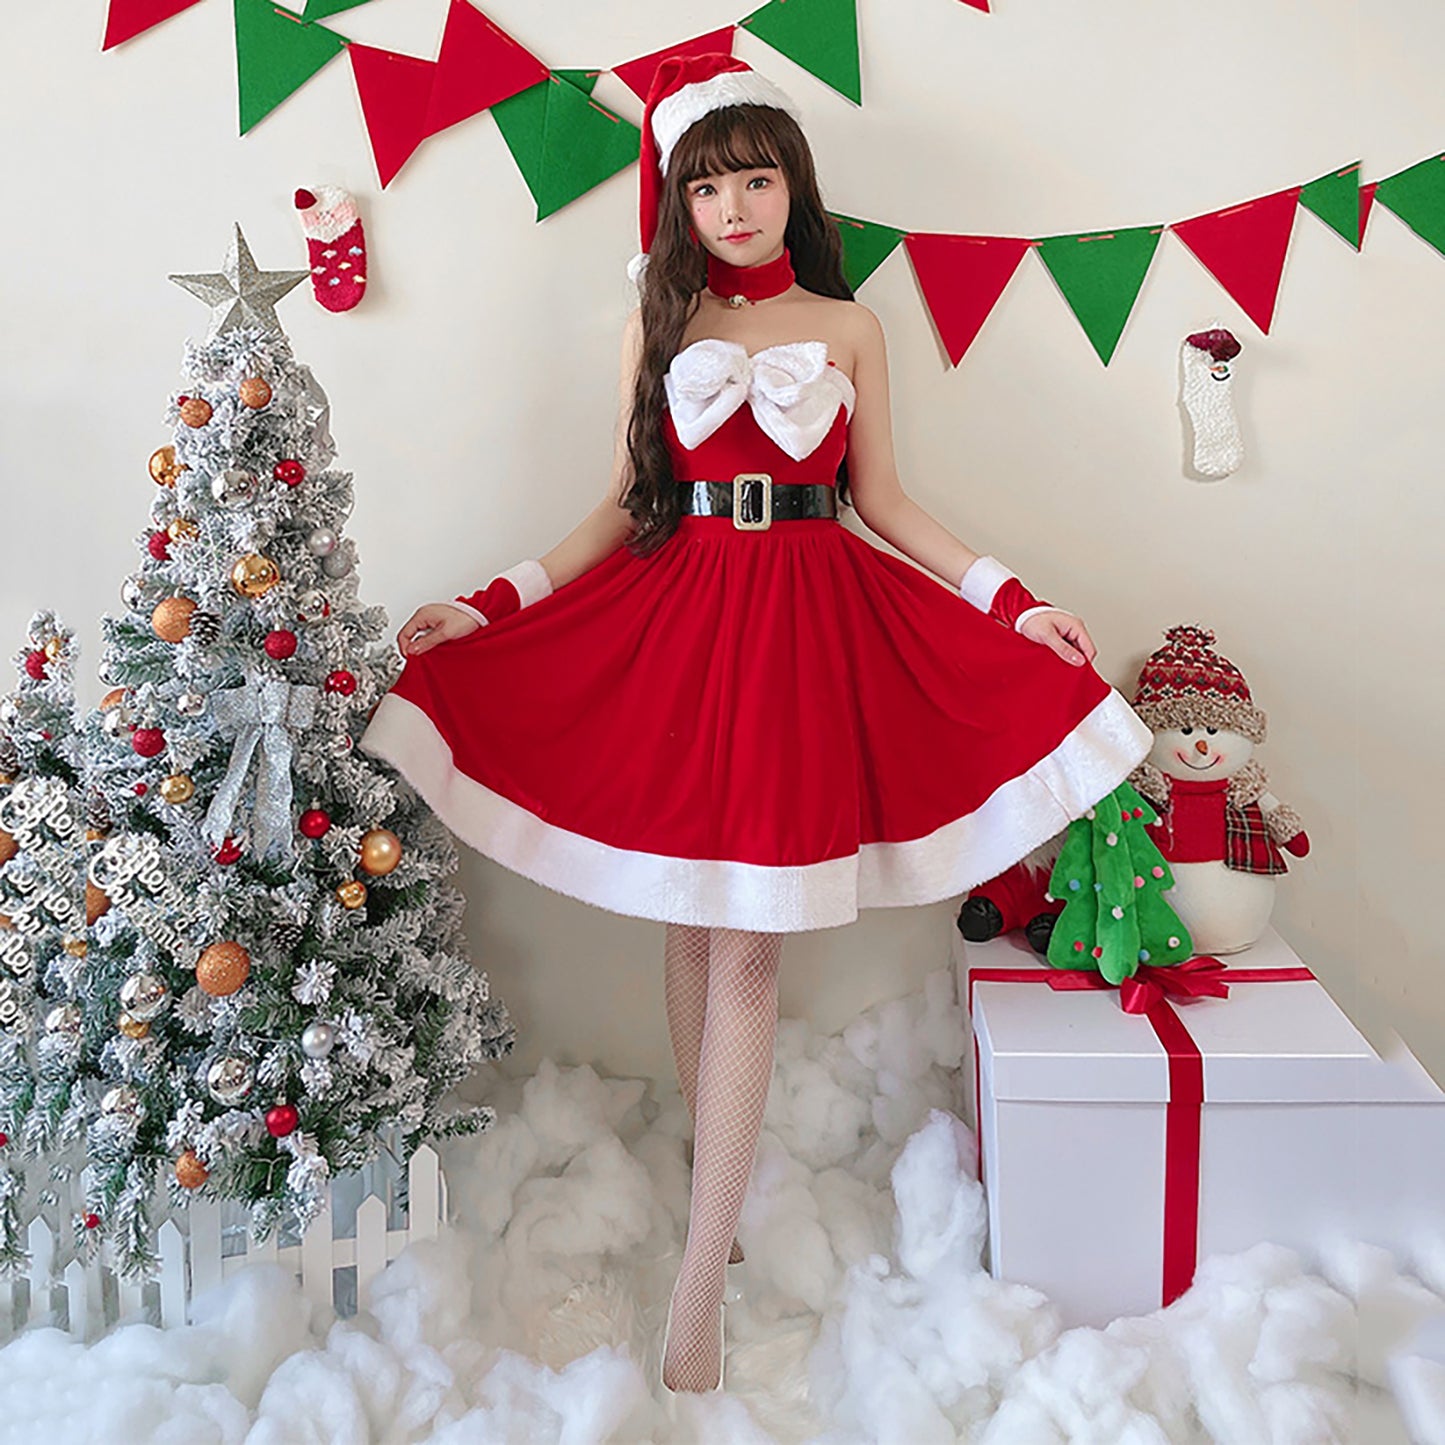 サンタ服 胸元リボン ワンピースドレス 衣装 クリスマス コスプレ レディース